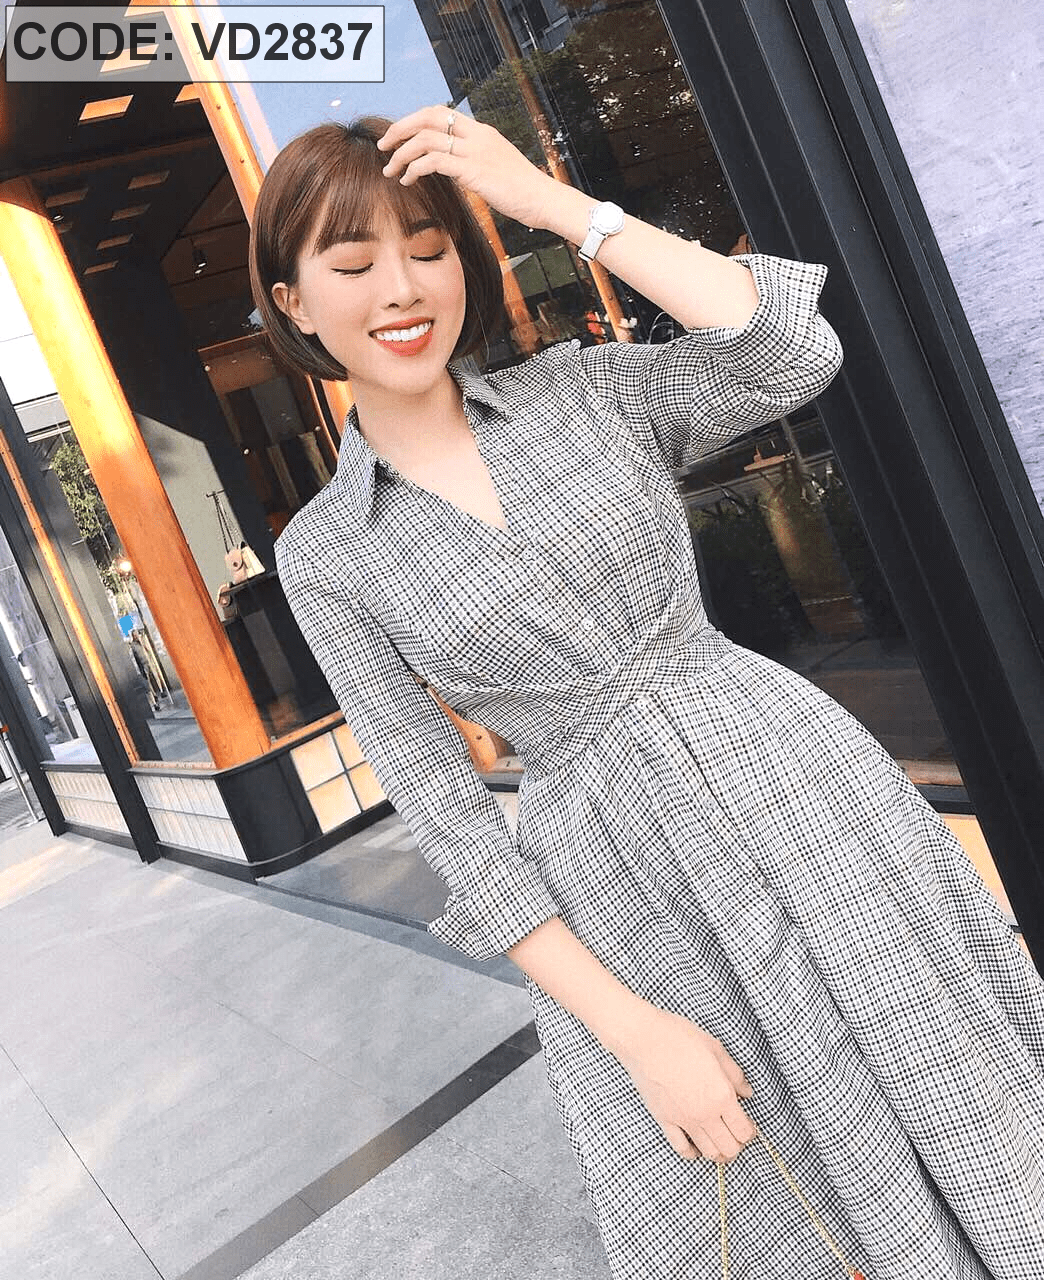 Đầm sơ mi – mặc kiểu gì cũng đẹp - Thời trang - Việt Giải Trí